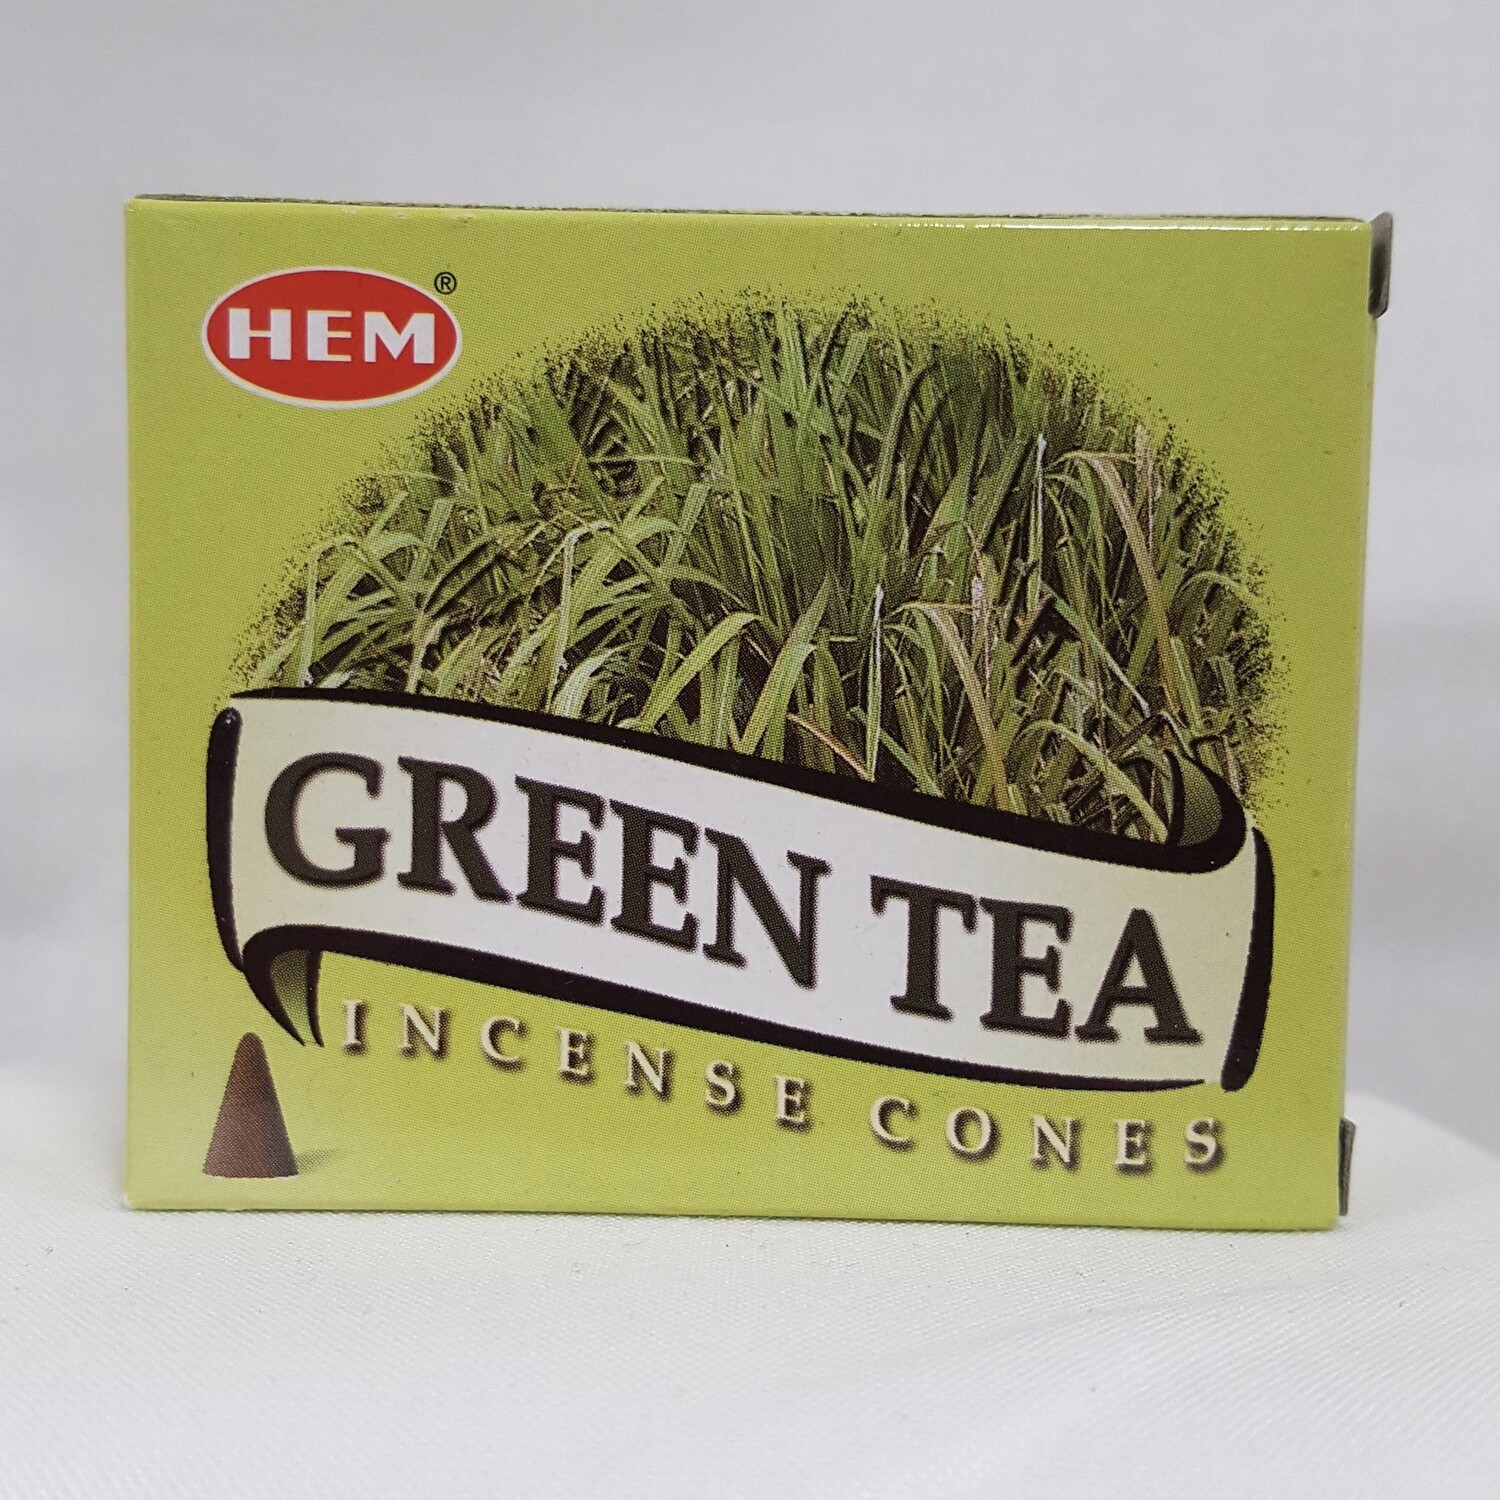 GREEN TEA HEM CONES